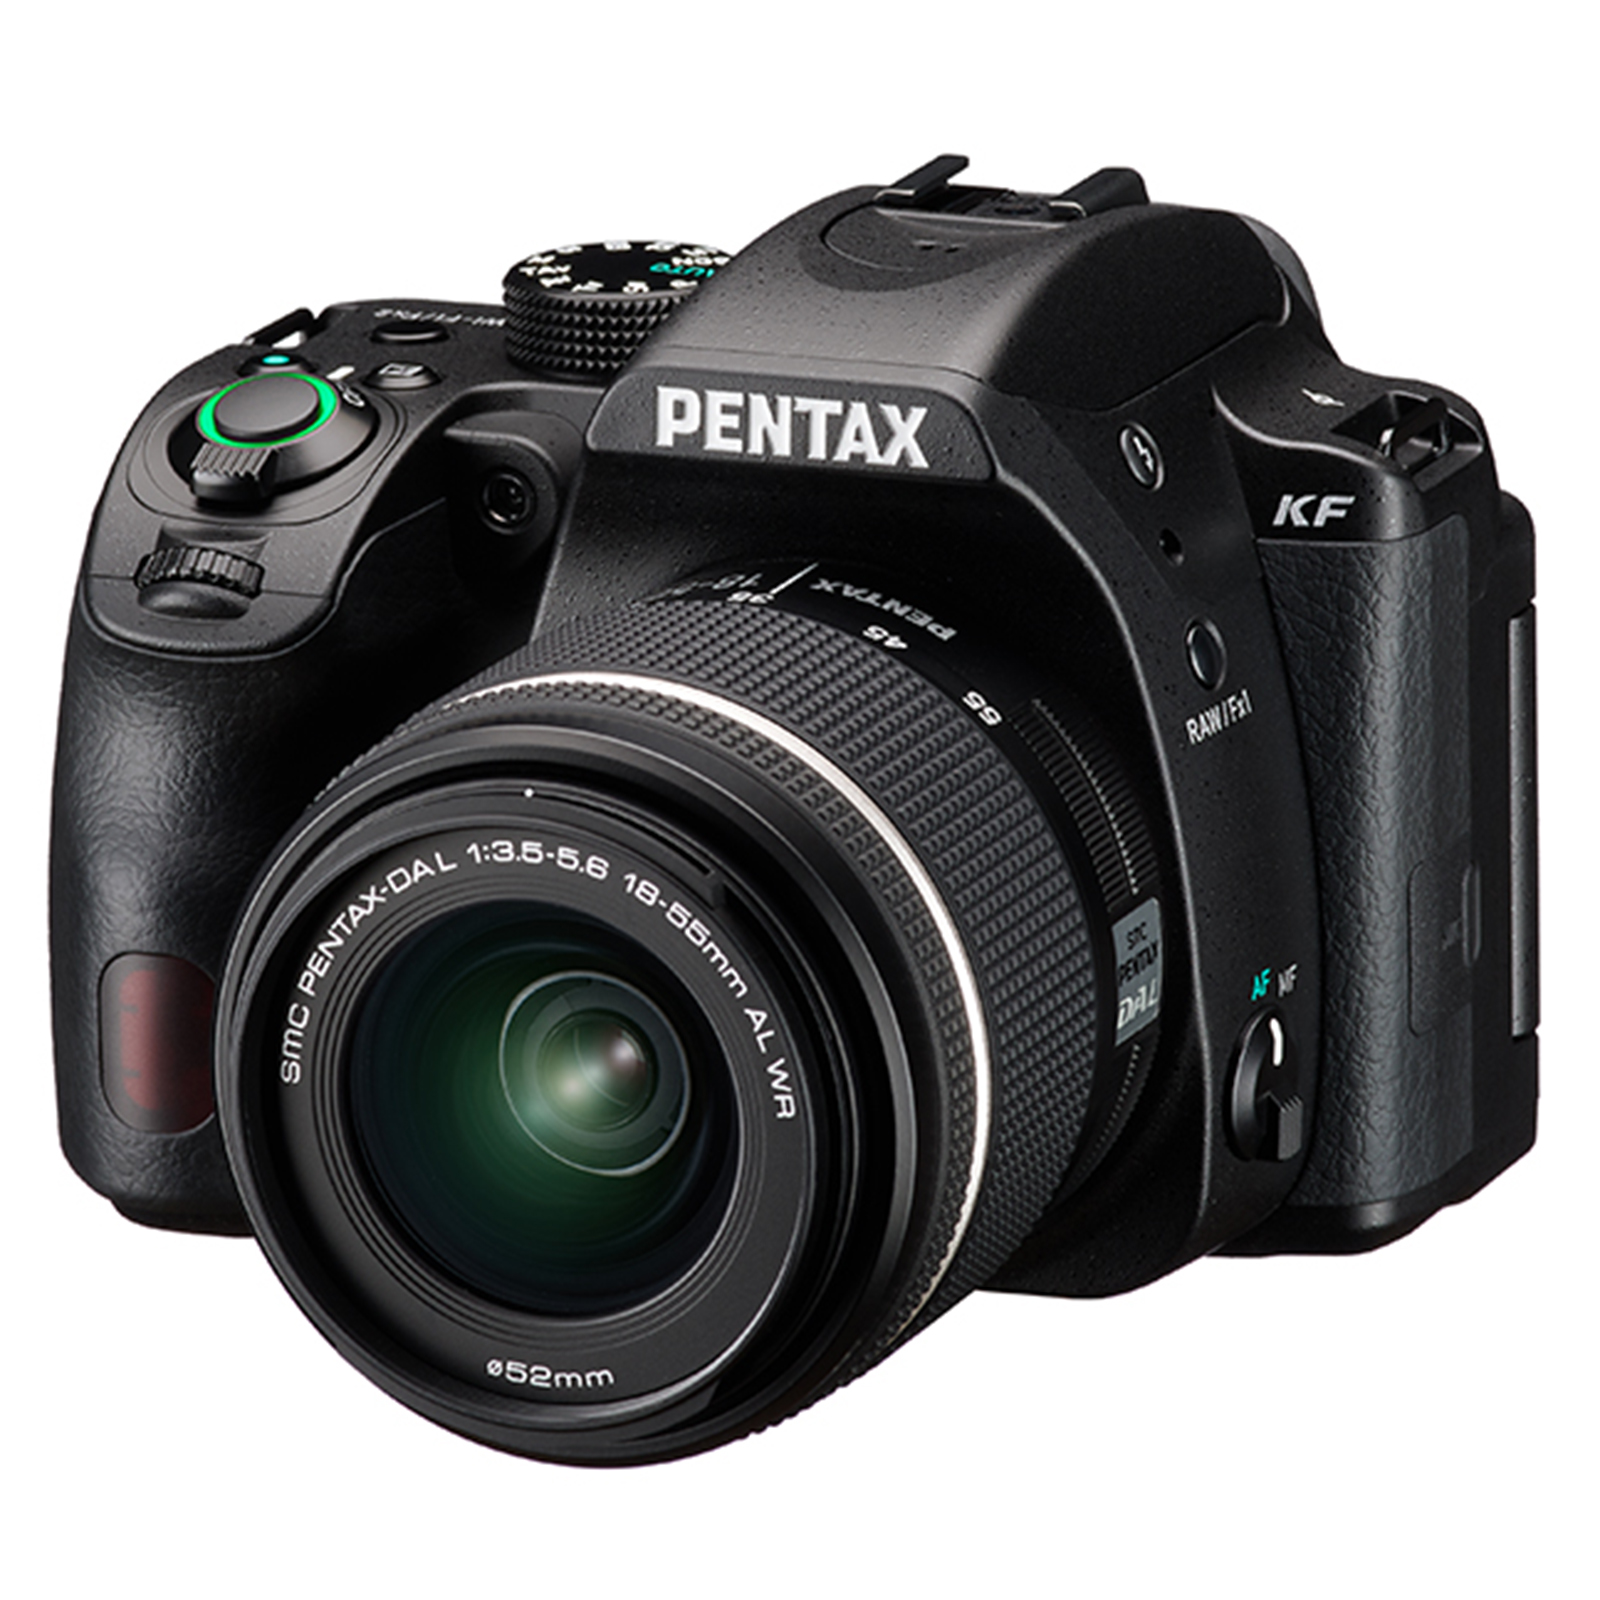 Image of Pentax KF Digital SLR Camera with 1855mm WR Lens